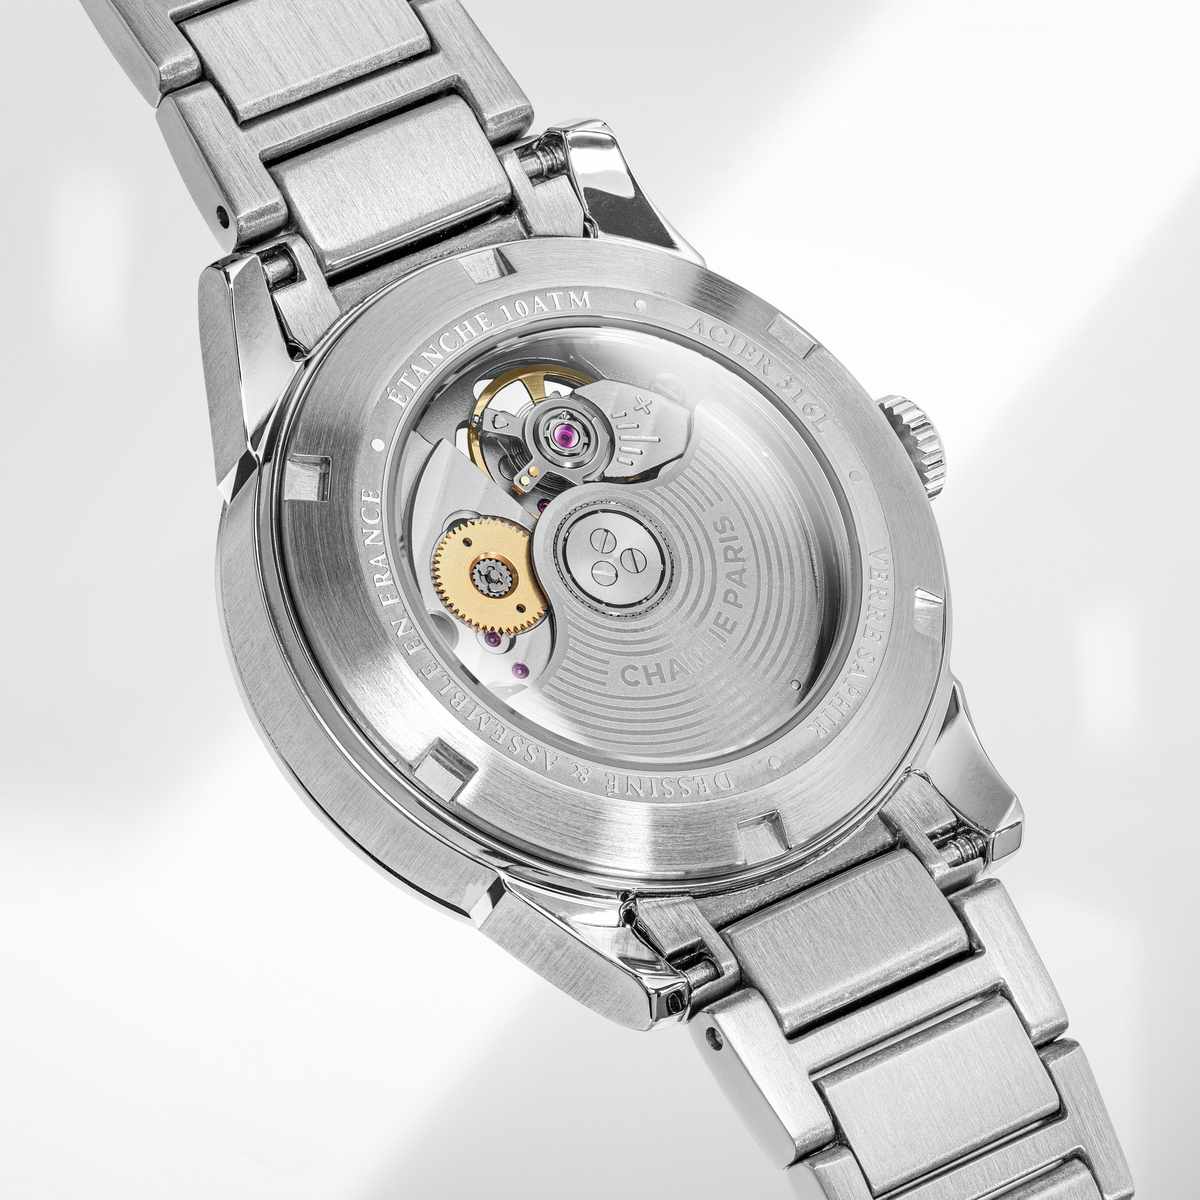 Fond transparent de la montre femme automatique Aurore avec mécanisme visible